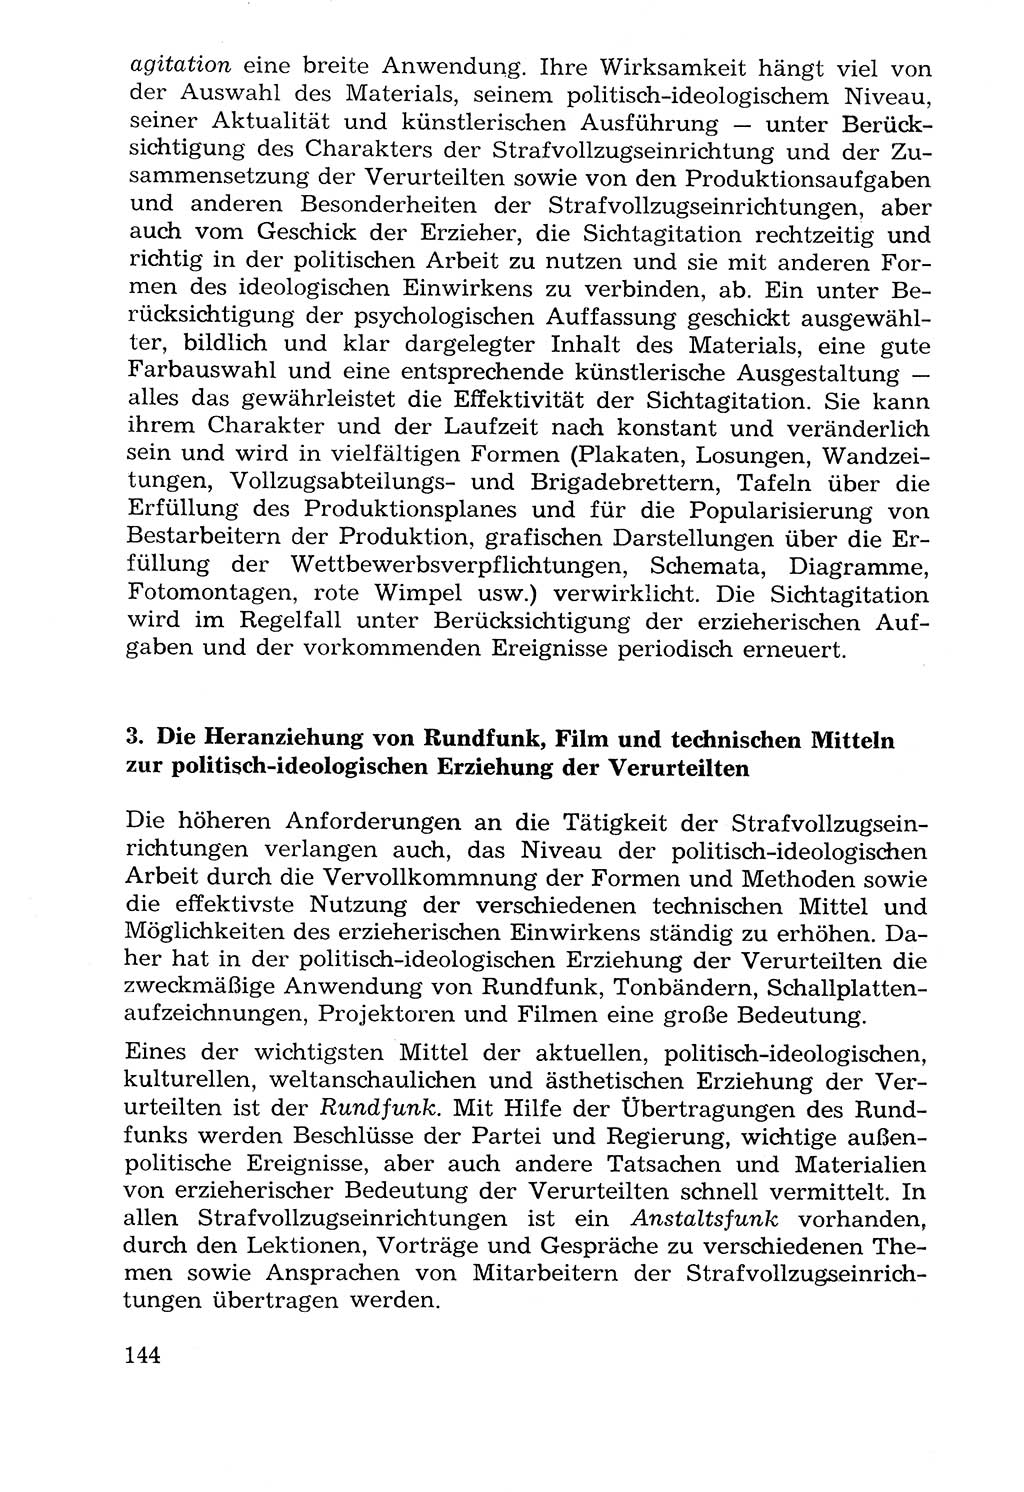 Lehrbuch der Strafvollzugspädagogik [Deutsche Demokratische Republik (DDR)] 1969, Seite 144 (Lb. SV-Pd. DDR 1969, S. 144)